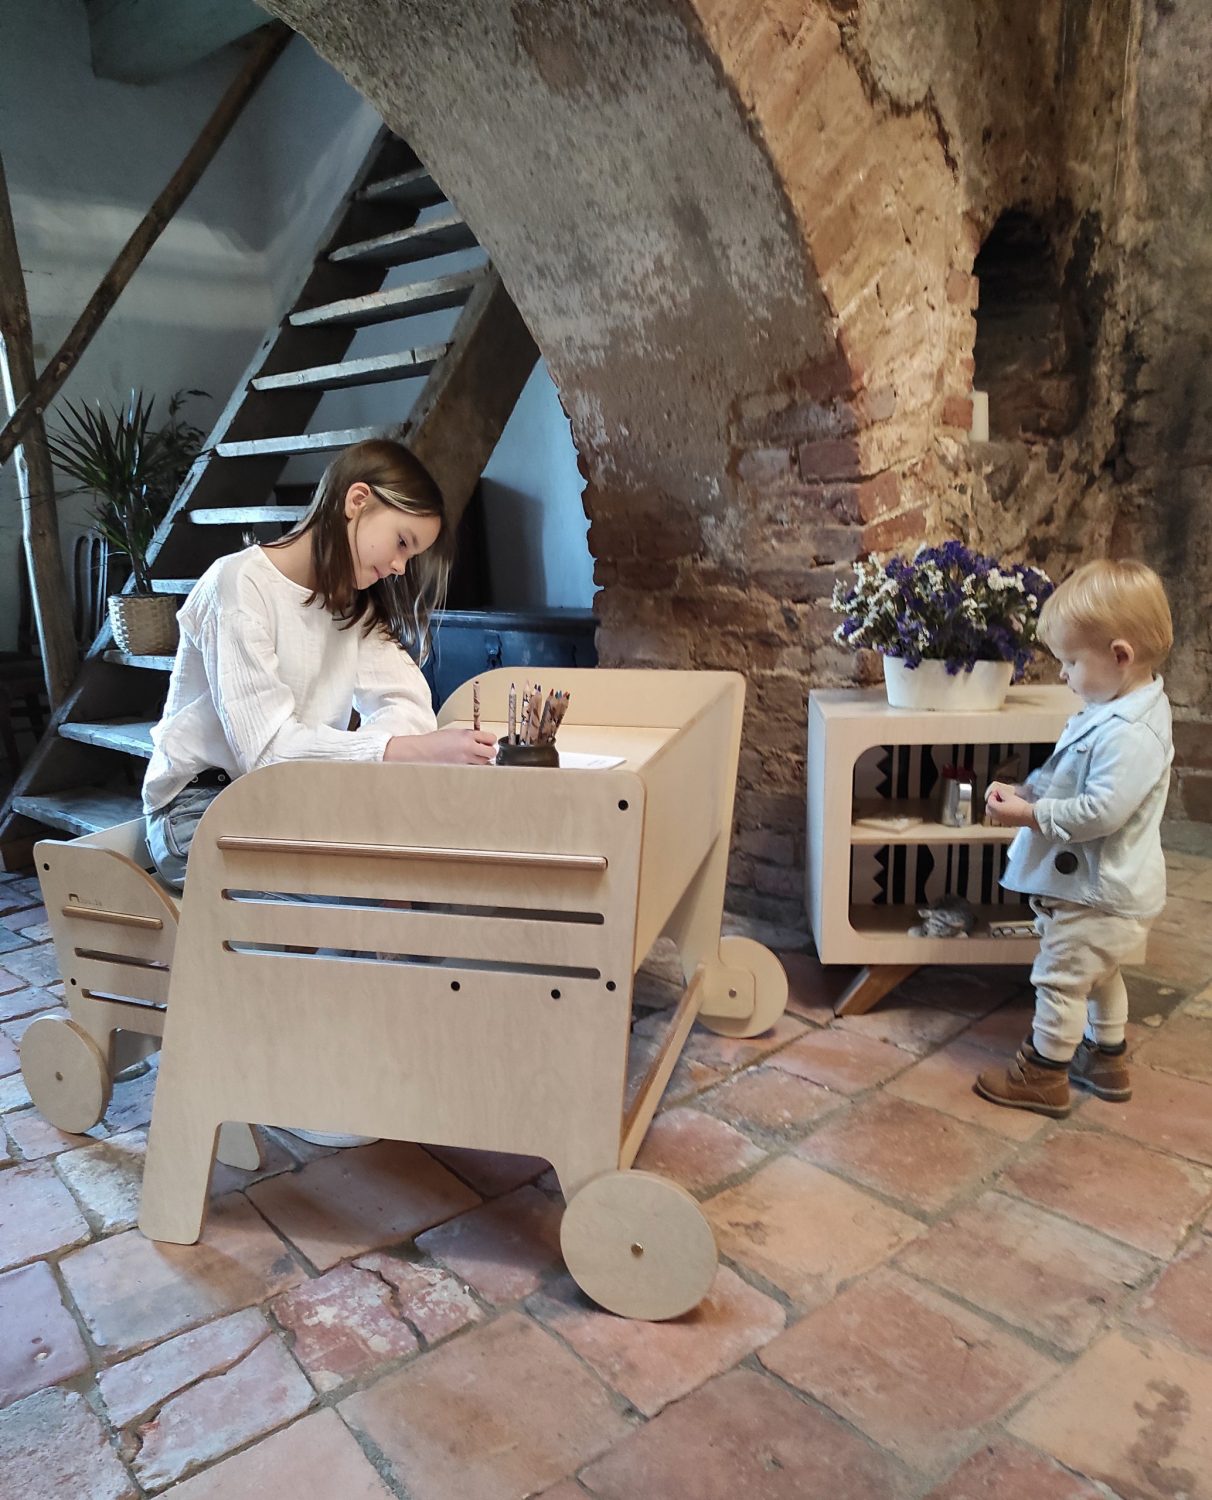 Silla de madera infantil Montessori – Labores Bella